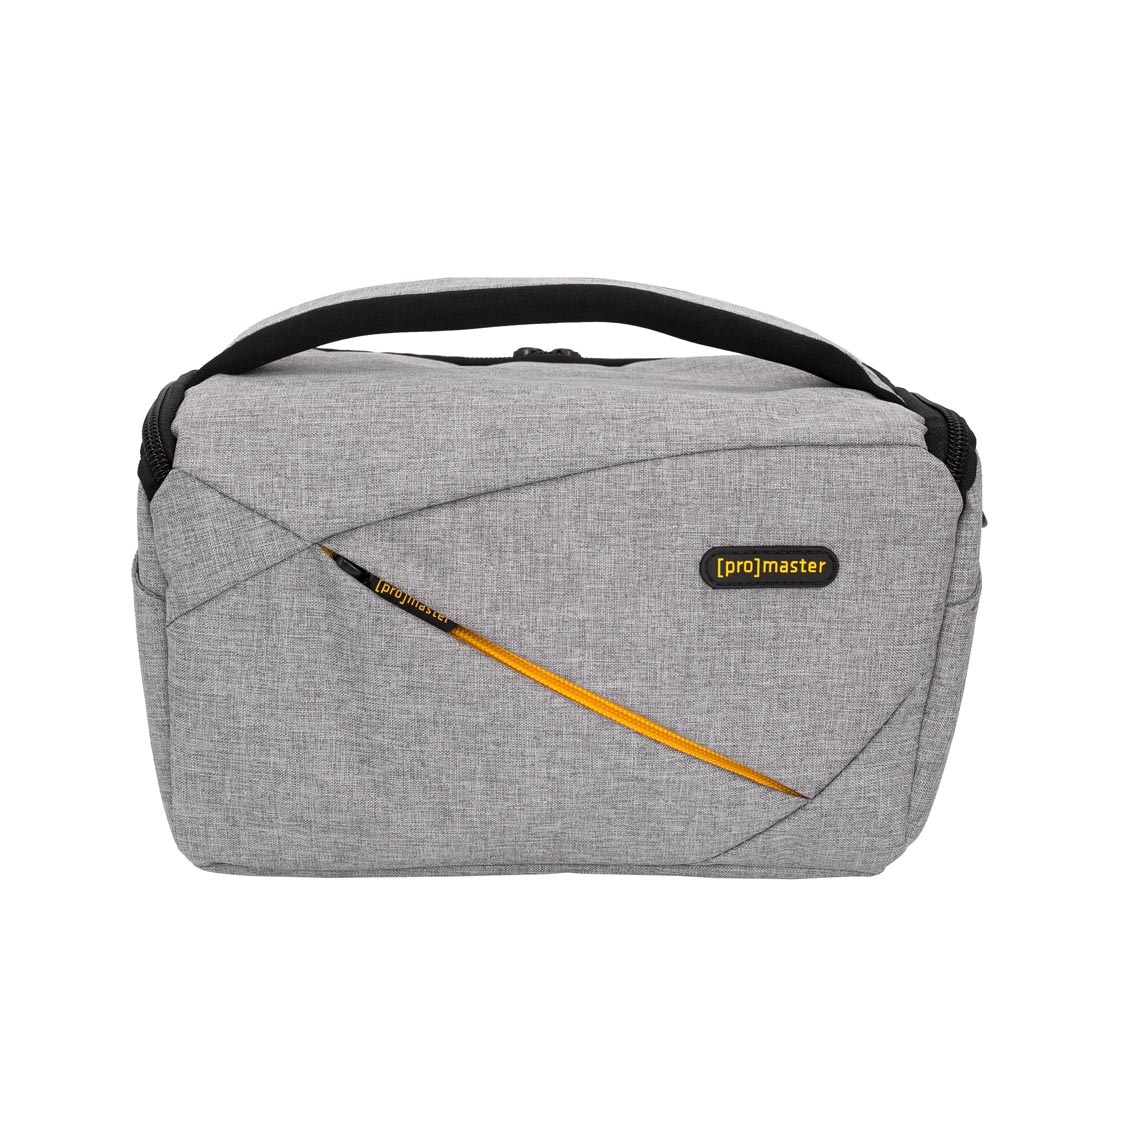 Promaster Impulse Shoulder Bag Large (grey)